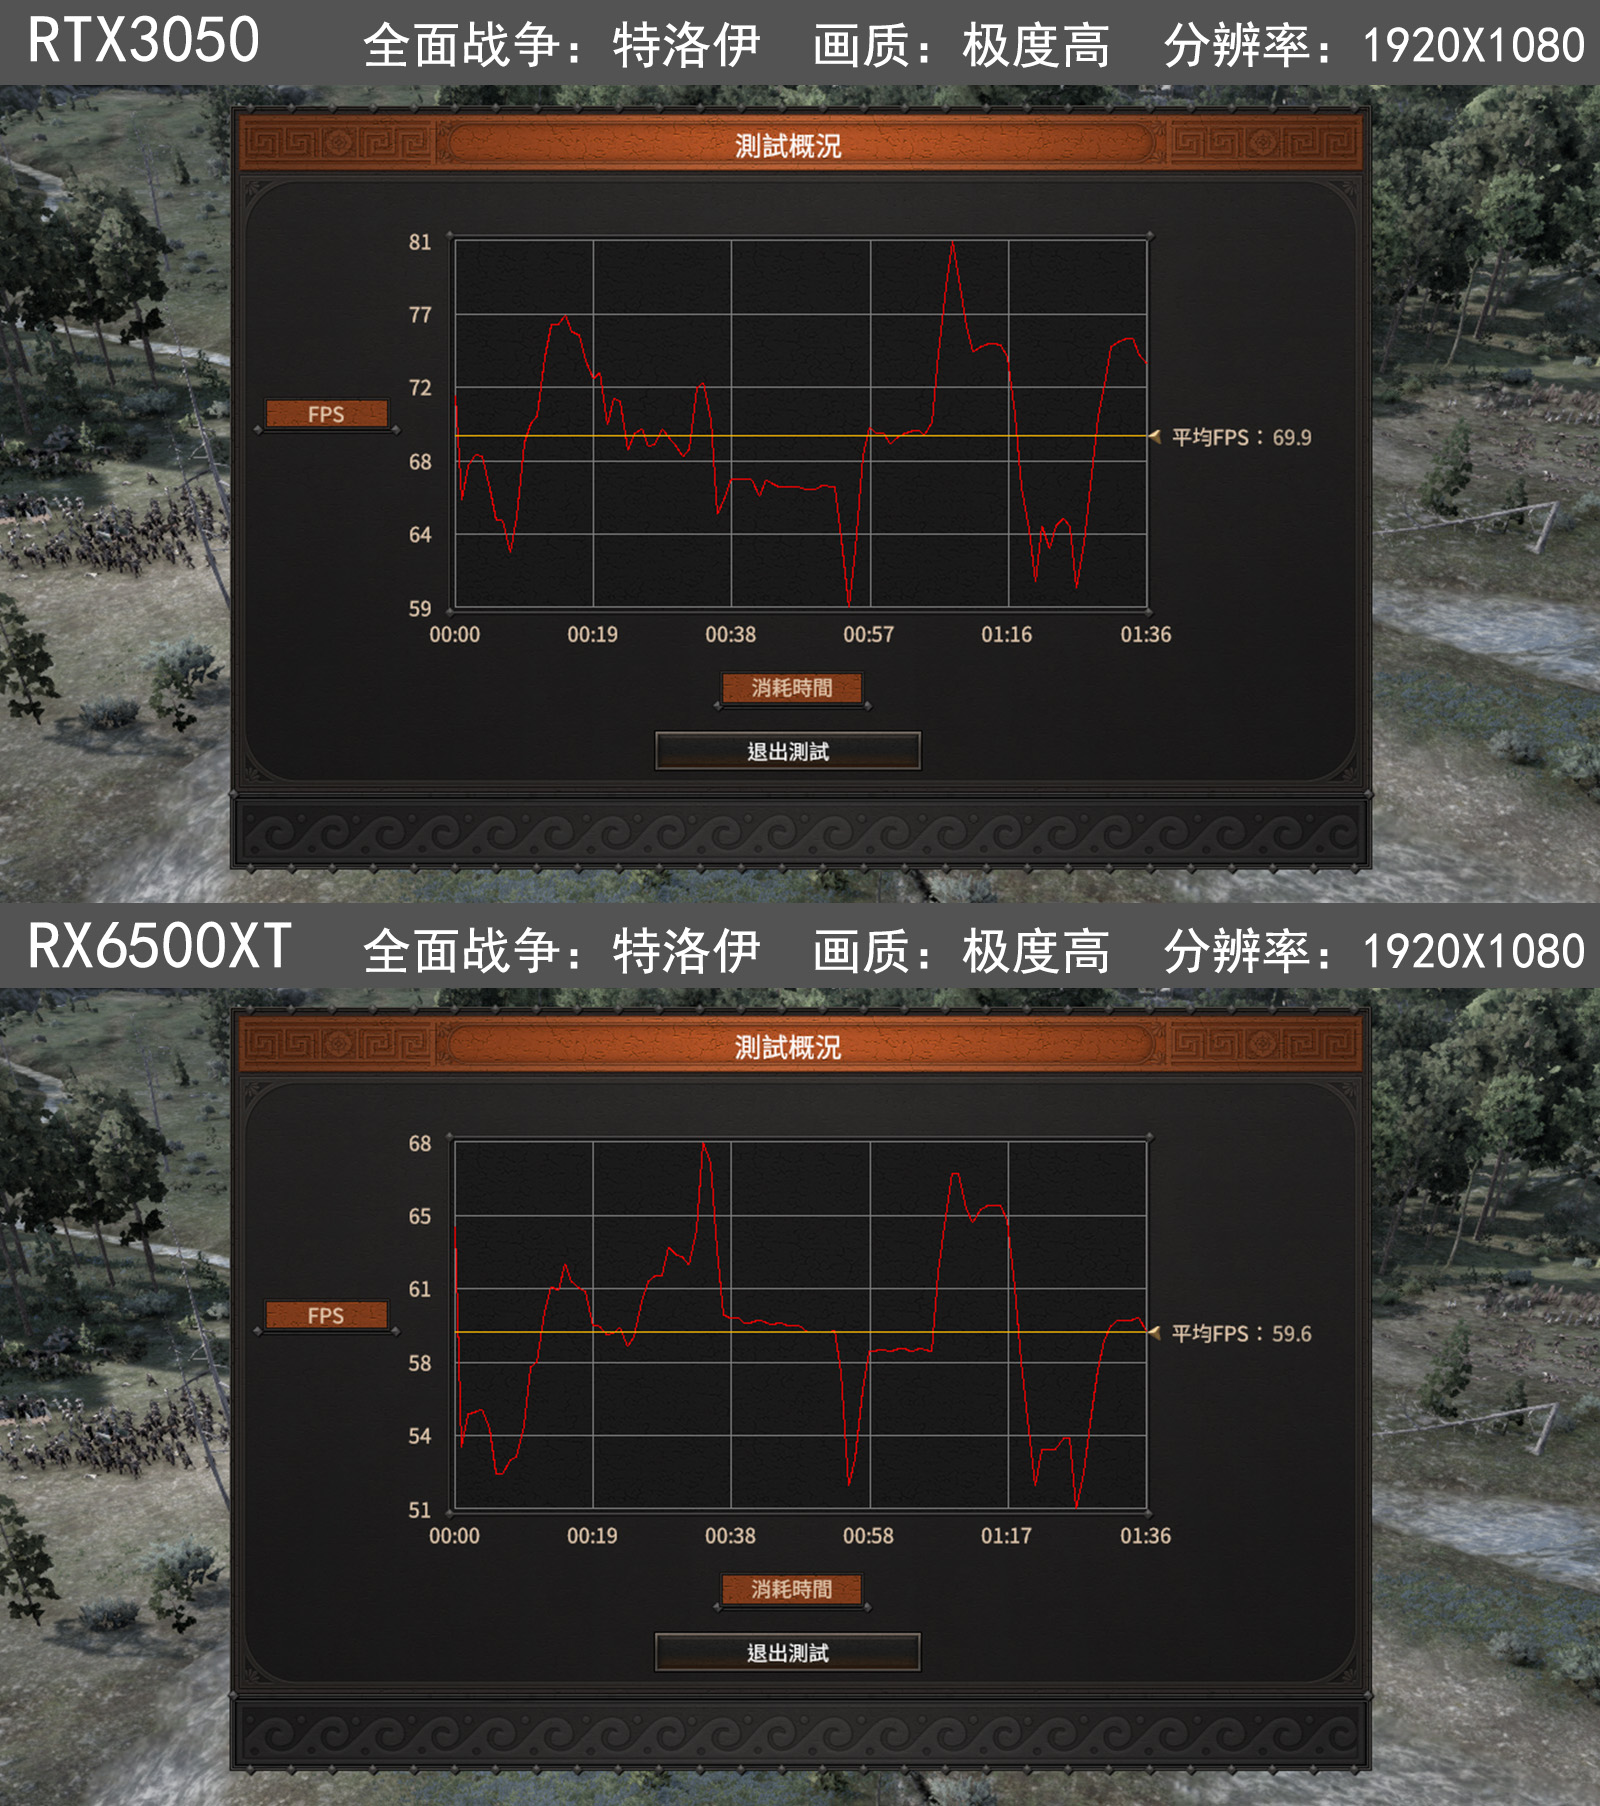 围观春节前的入门游戏独显大战：RTX3050对战RX6500XT测试分享